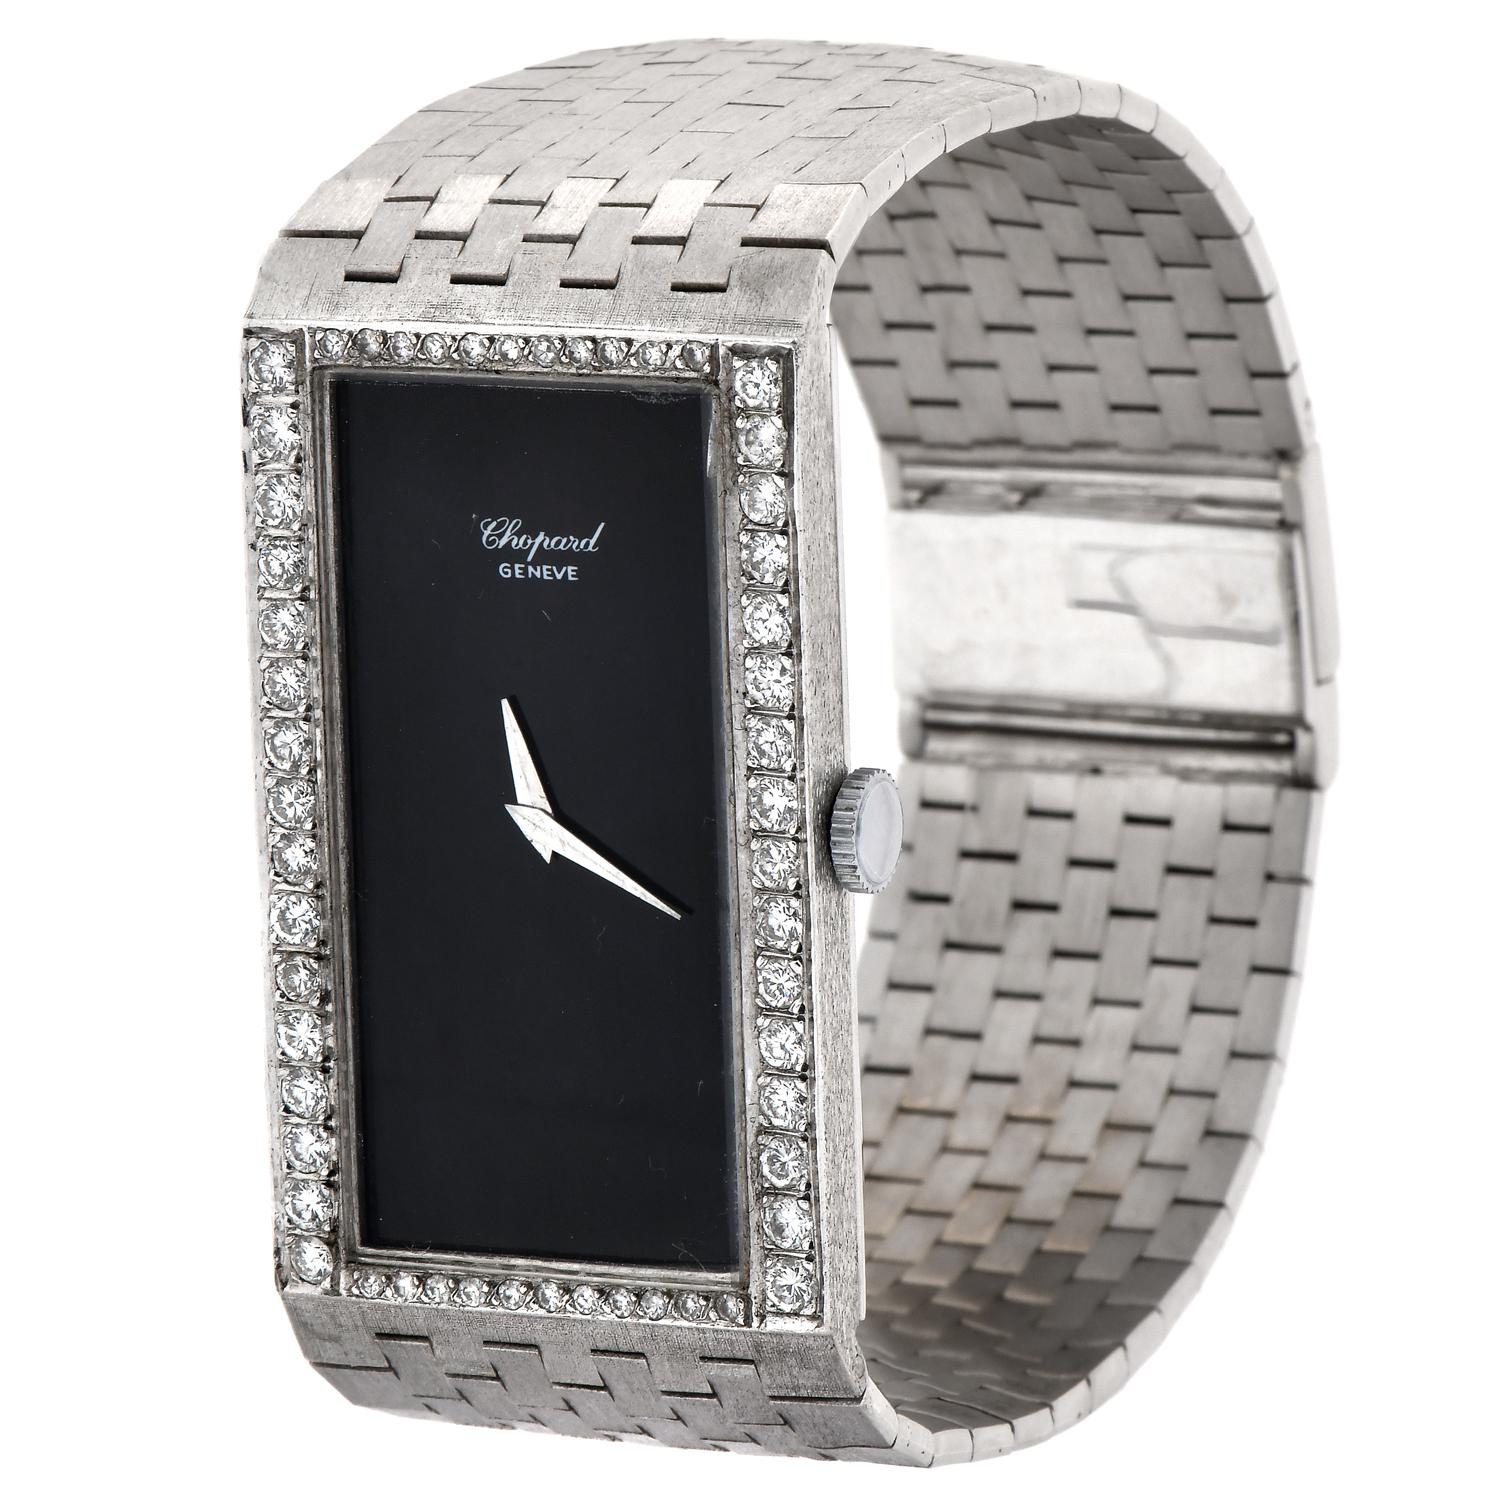 chopard vintage watch